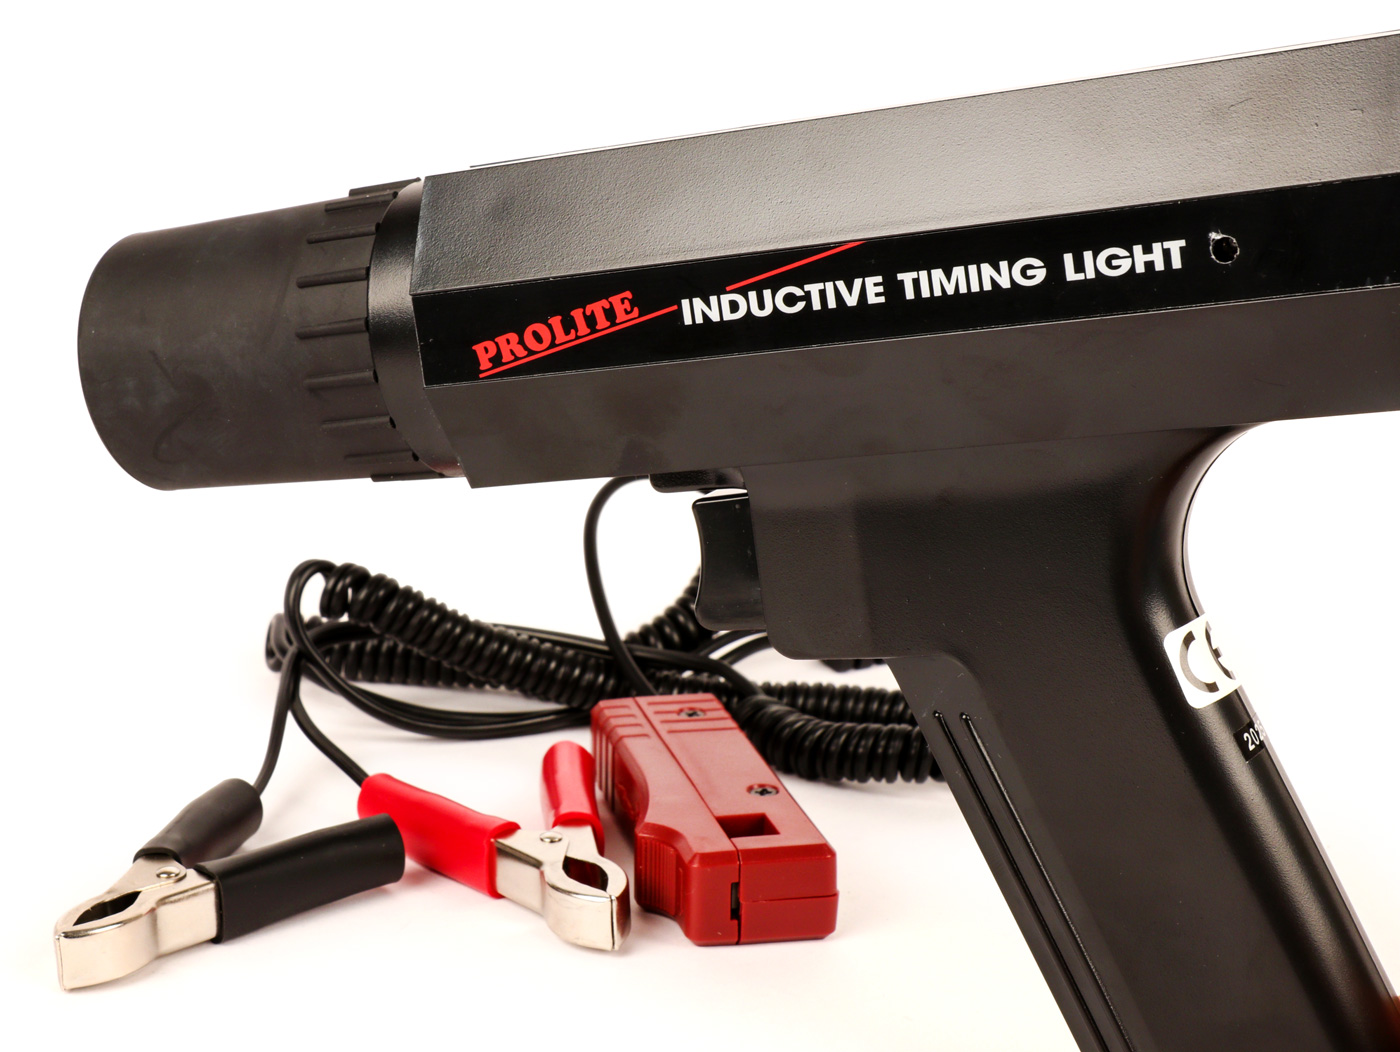 Zündlichtpistole -TRISCO (Prolite)- Stroboskoplampe Blitzpistole